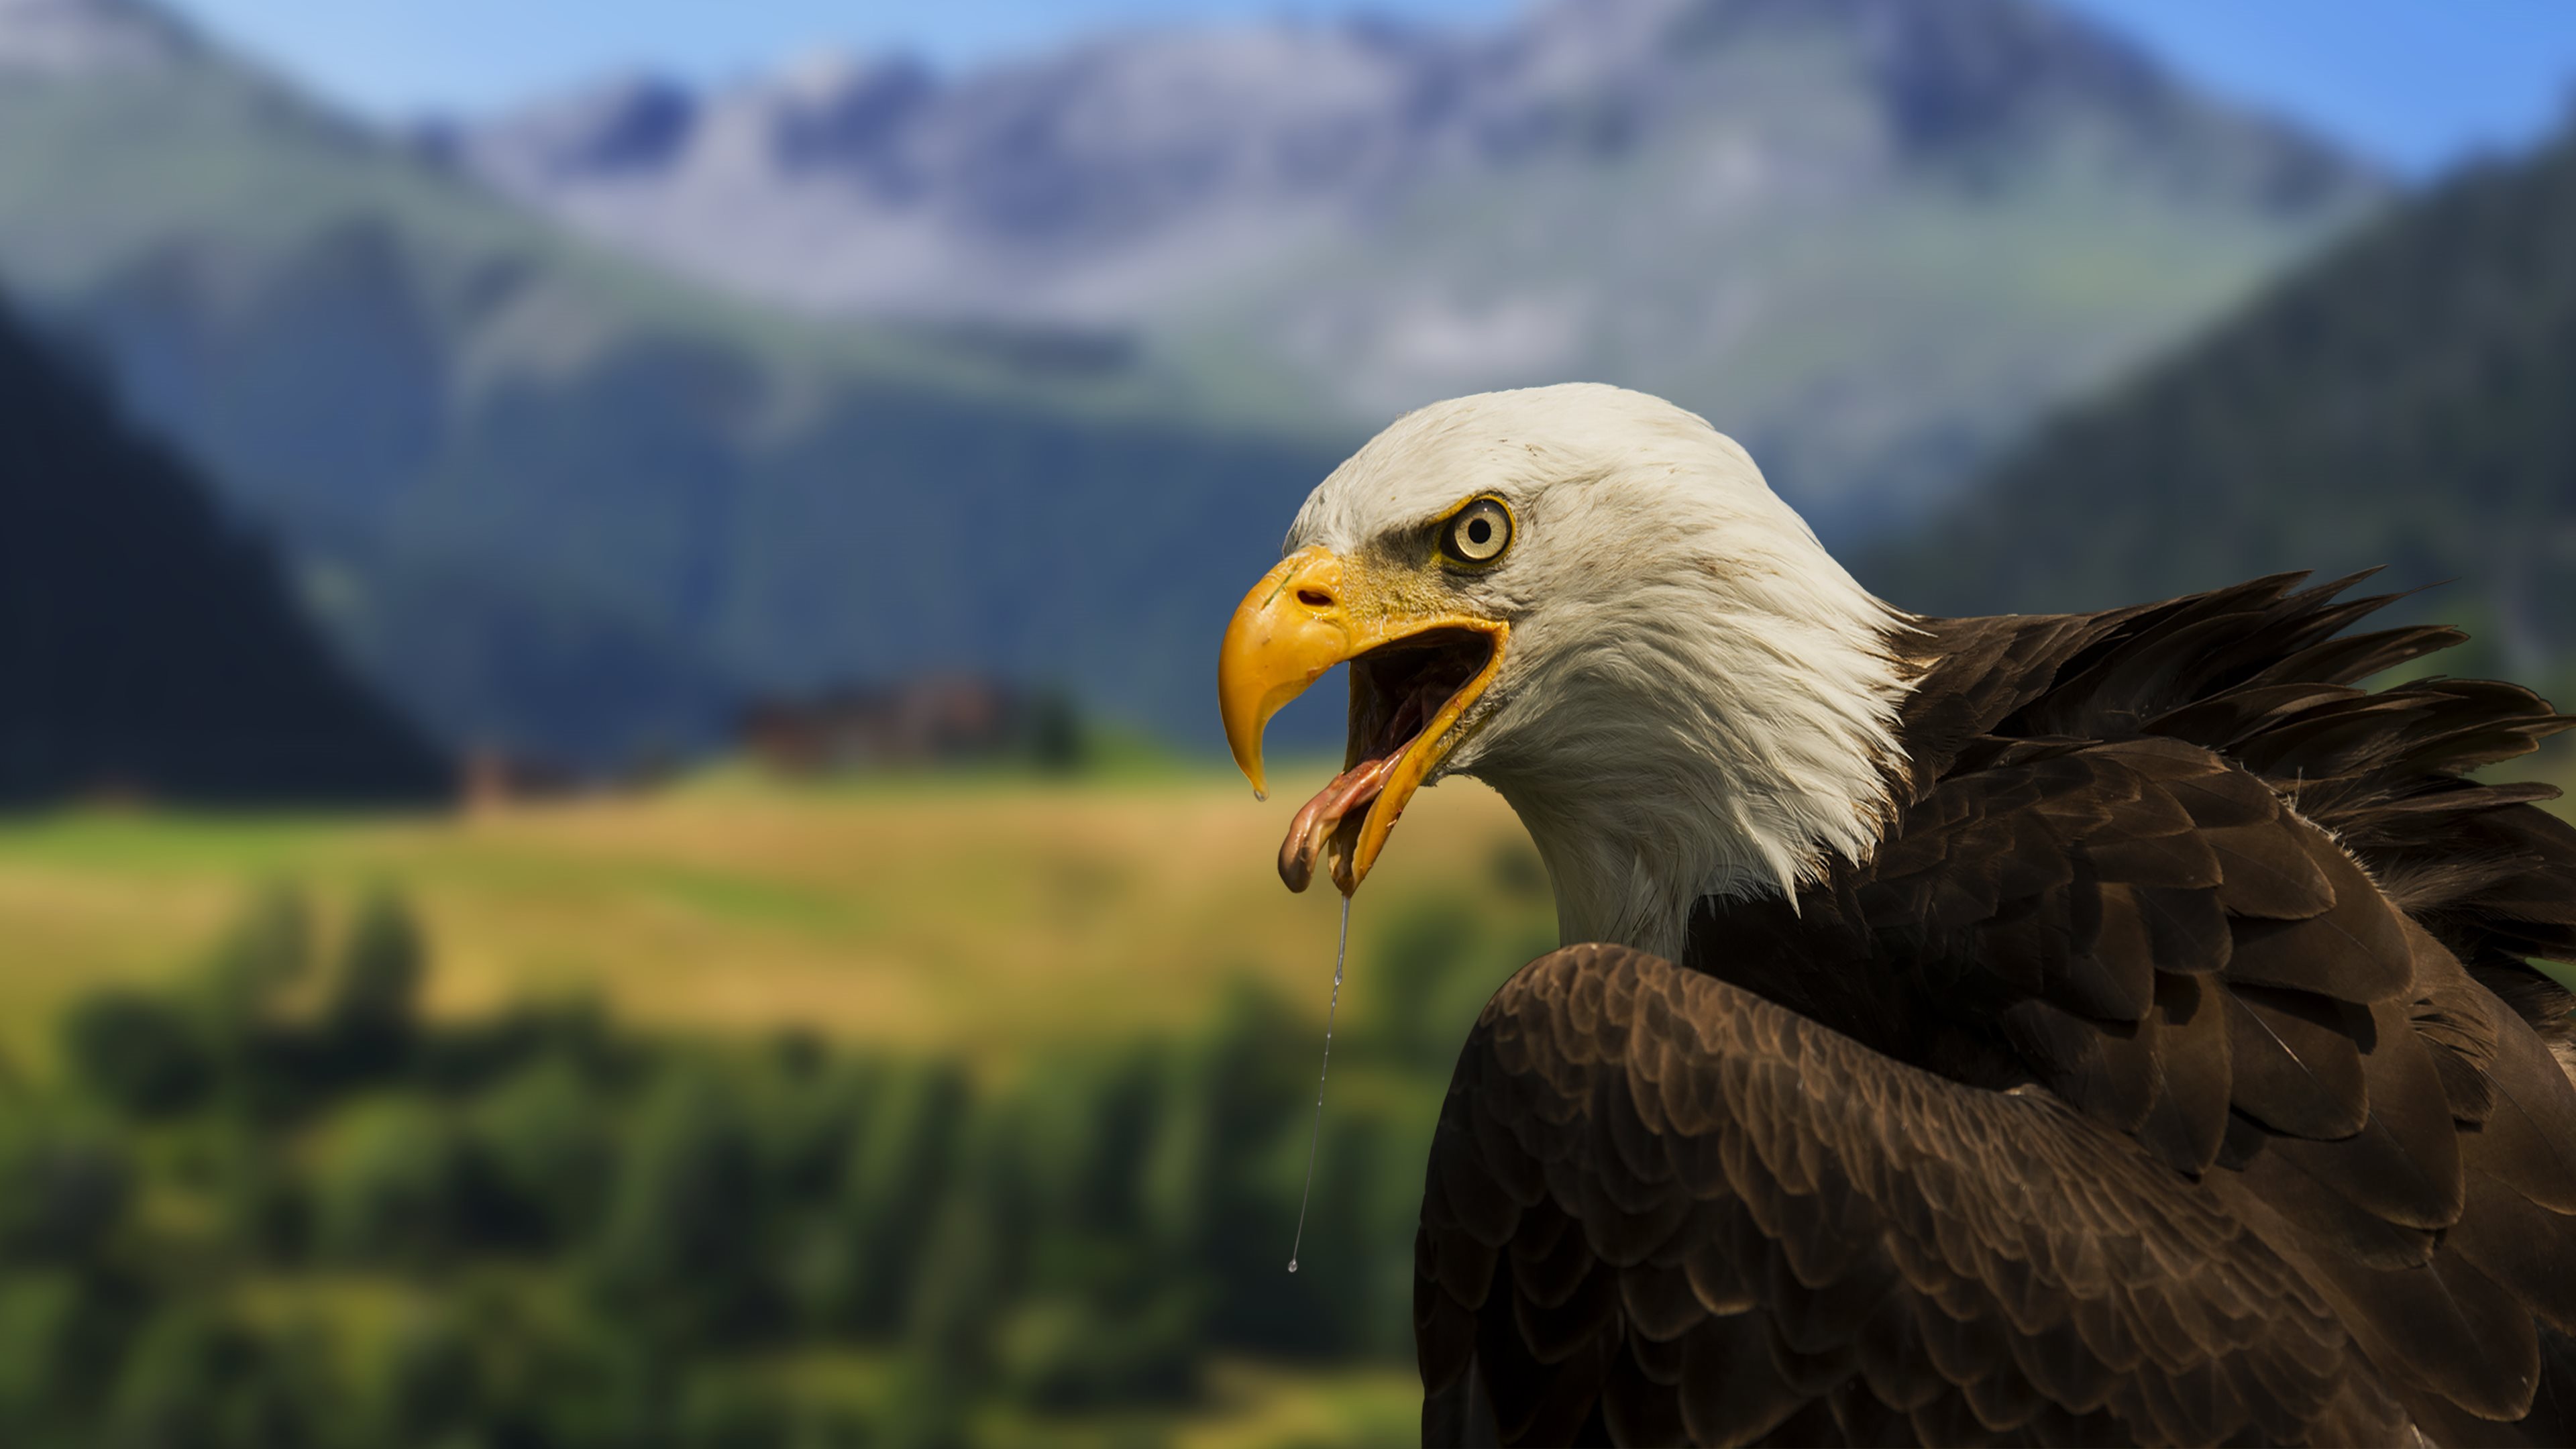 400+ Free Brown Eagle & Eagle Images - Pixabay